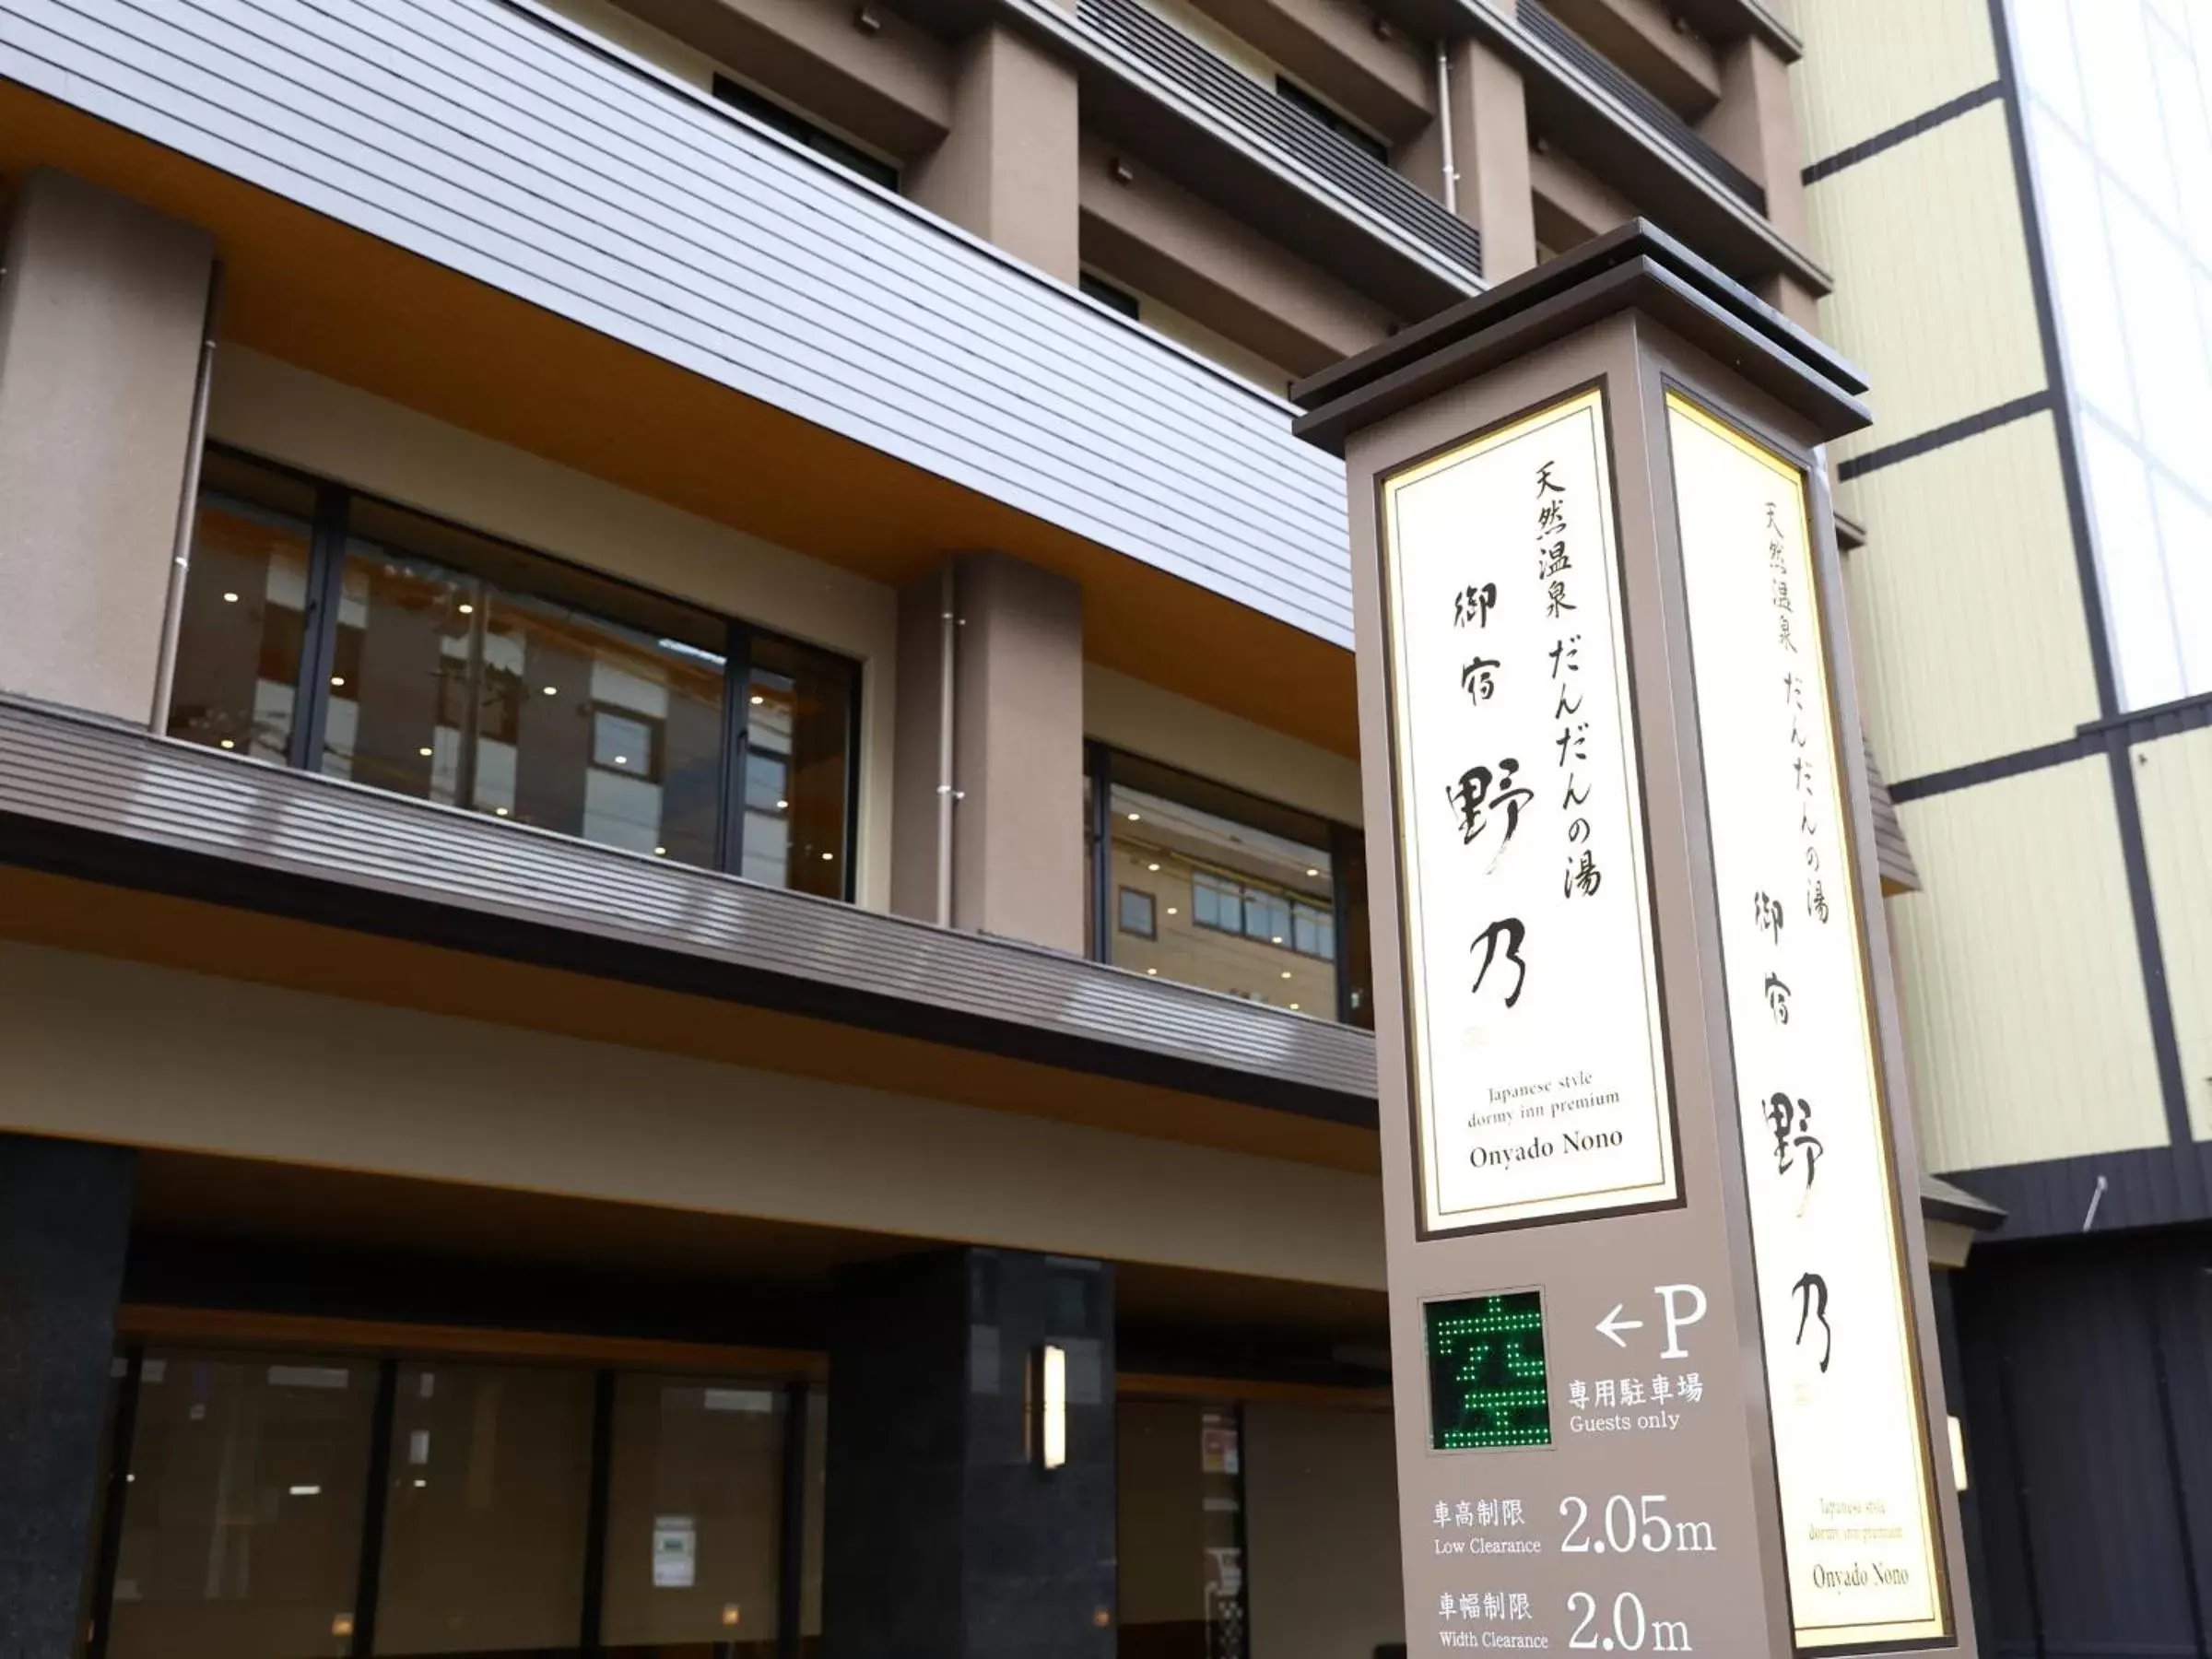 Property Building in Onyado Nono Matsue Natural Hot Spring